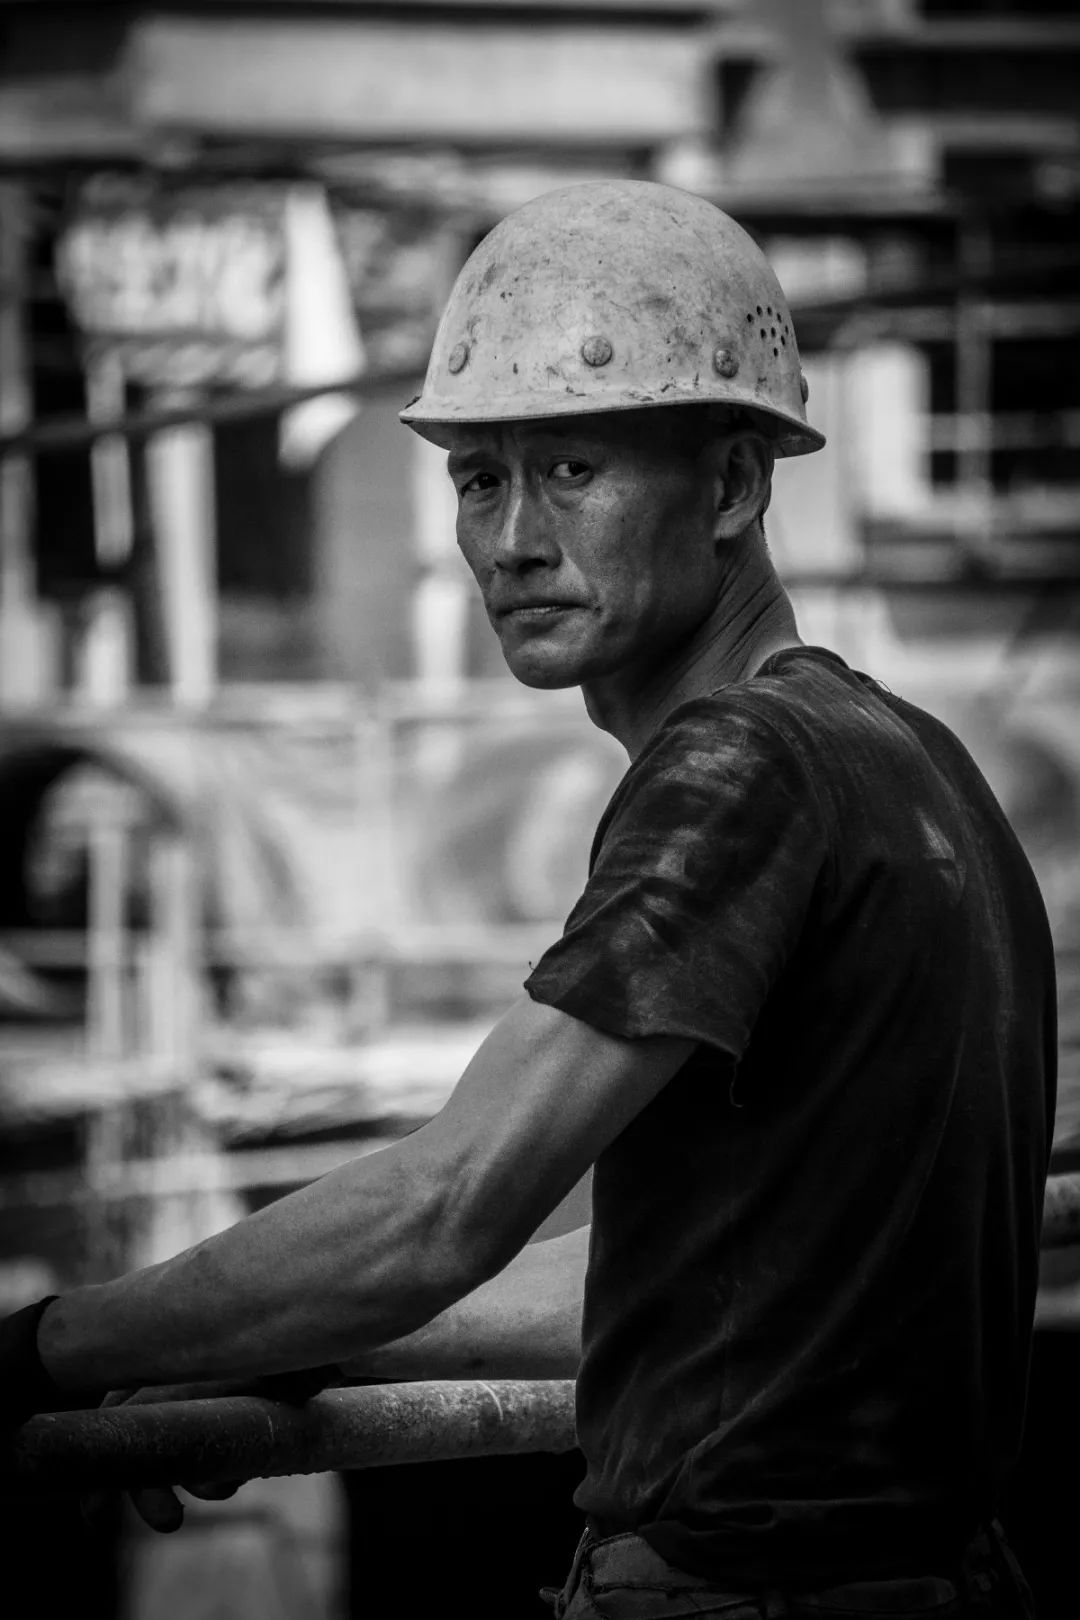 广安某工地施工工人,摄影作品《劳动者素描》徐小雨 摄.